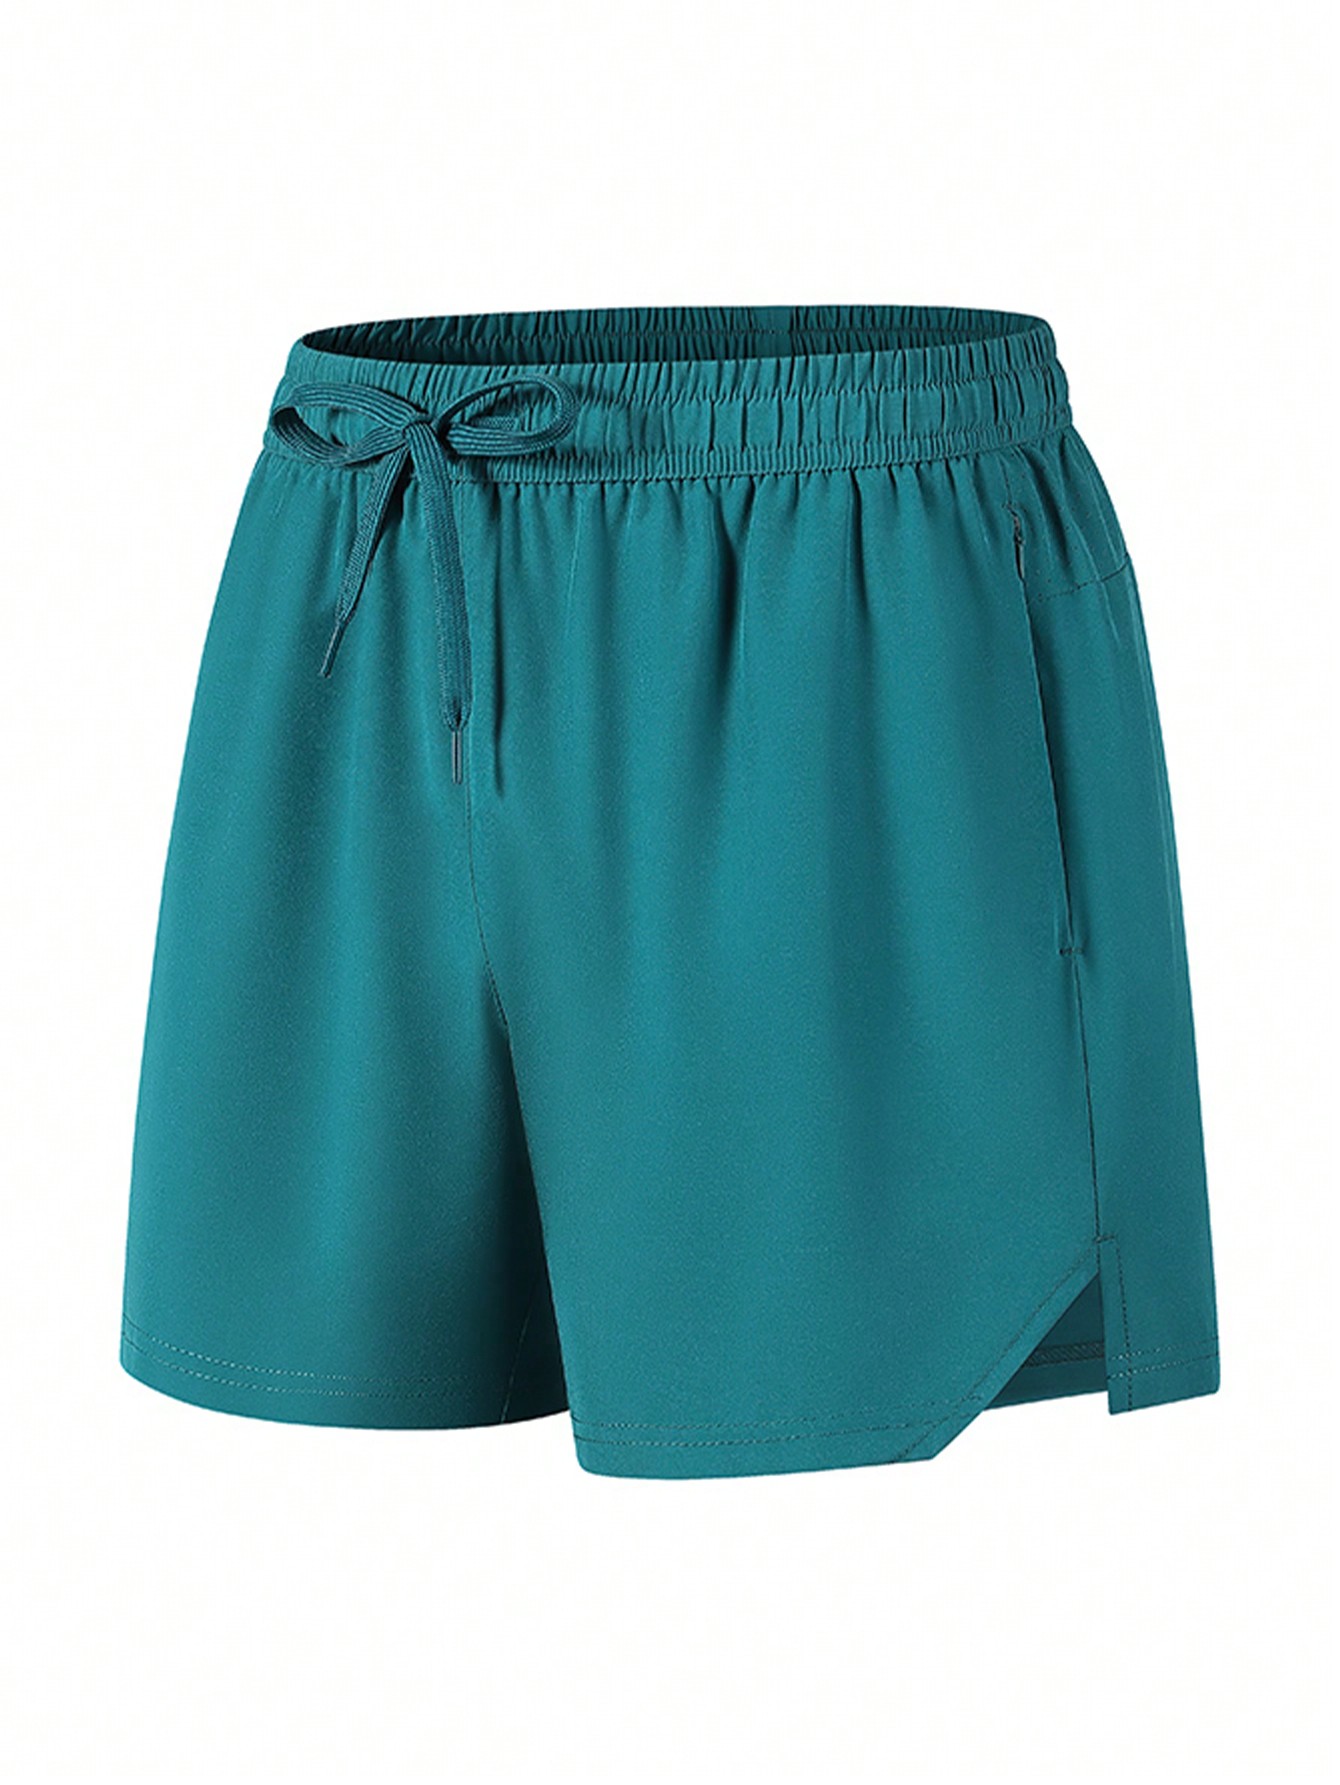 1 шт. Мужские быстросохнущие дышащие спортивные шорты на лето, темно-зеленый